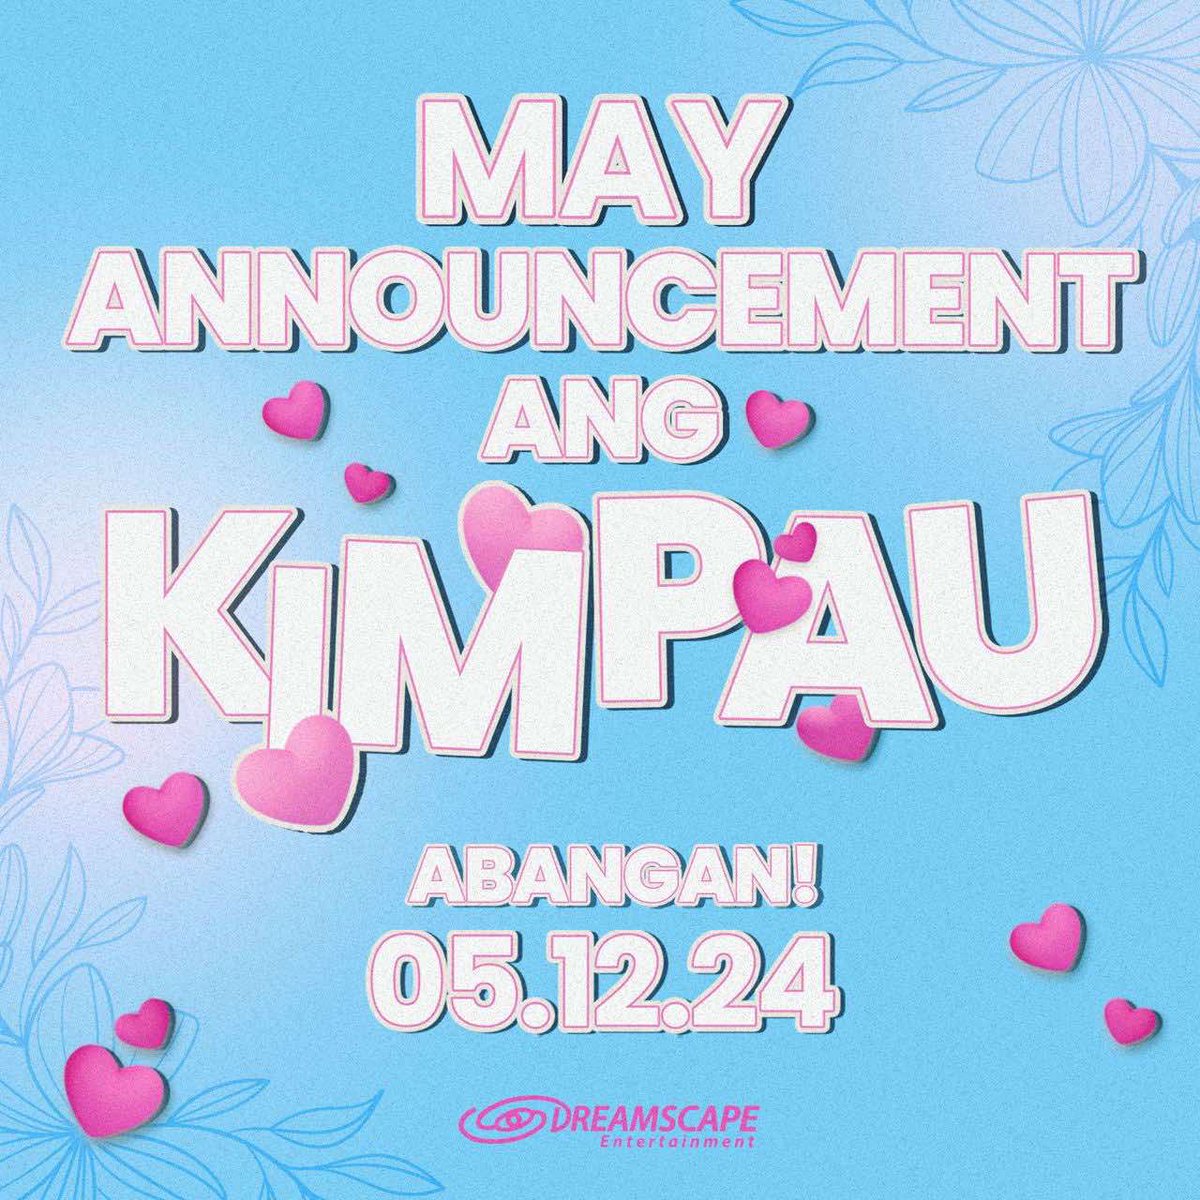 Abangan this 05.12.24 💜 #KimPauAnnouncement #KimPau